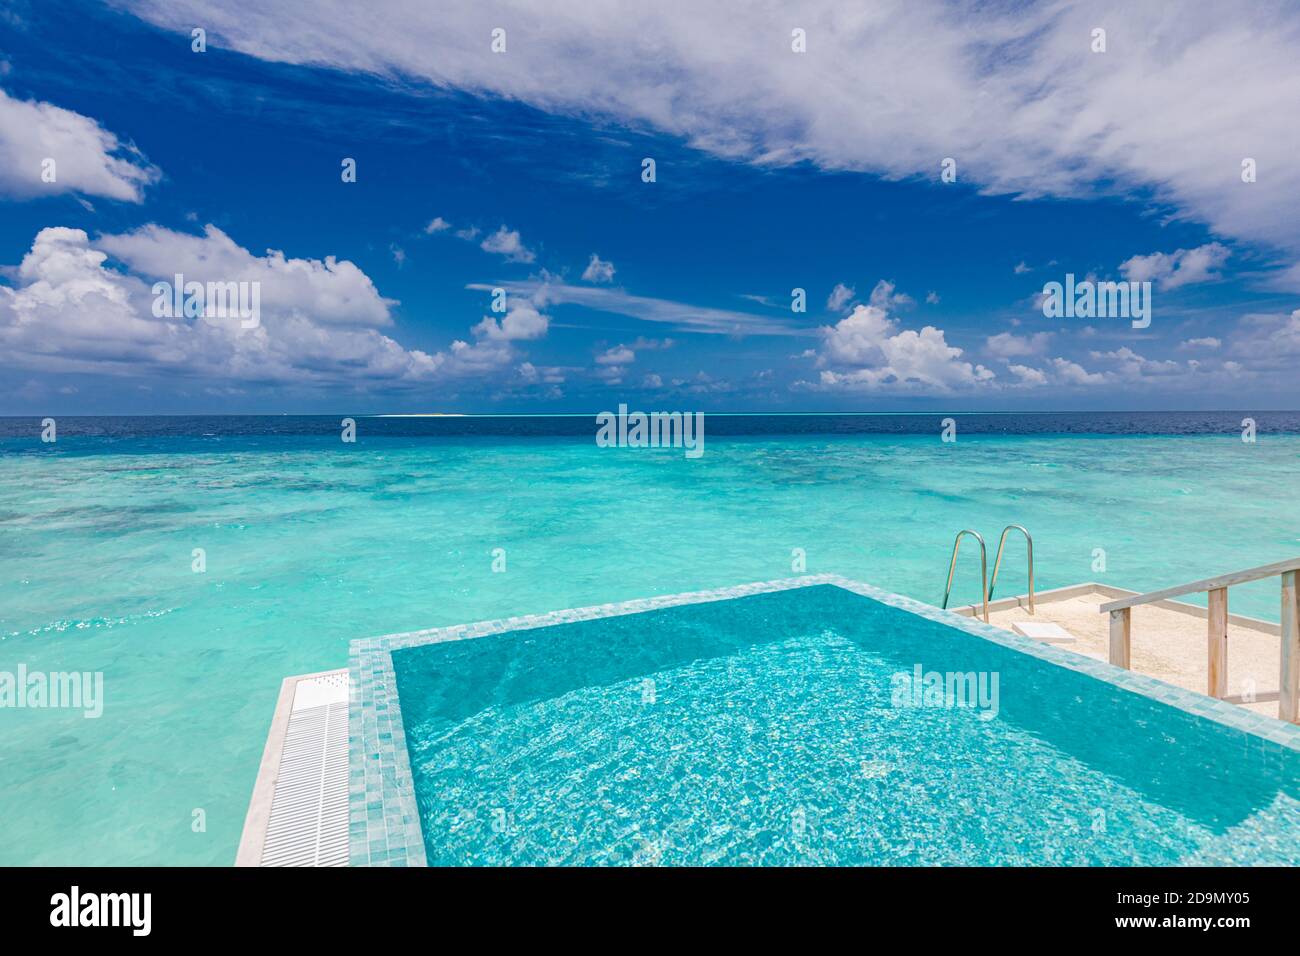 Infinity-Pool mit Blick auf Meer und Meer auf blauen Himmel Hintergrund. Luxuriöser Infinity-Pool über einer herrlichen türkisfarbenen Lagune und Leiter ins Wasser Stockfoto